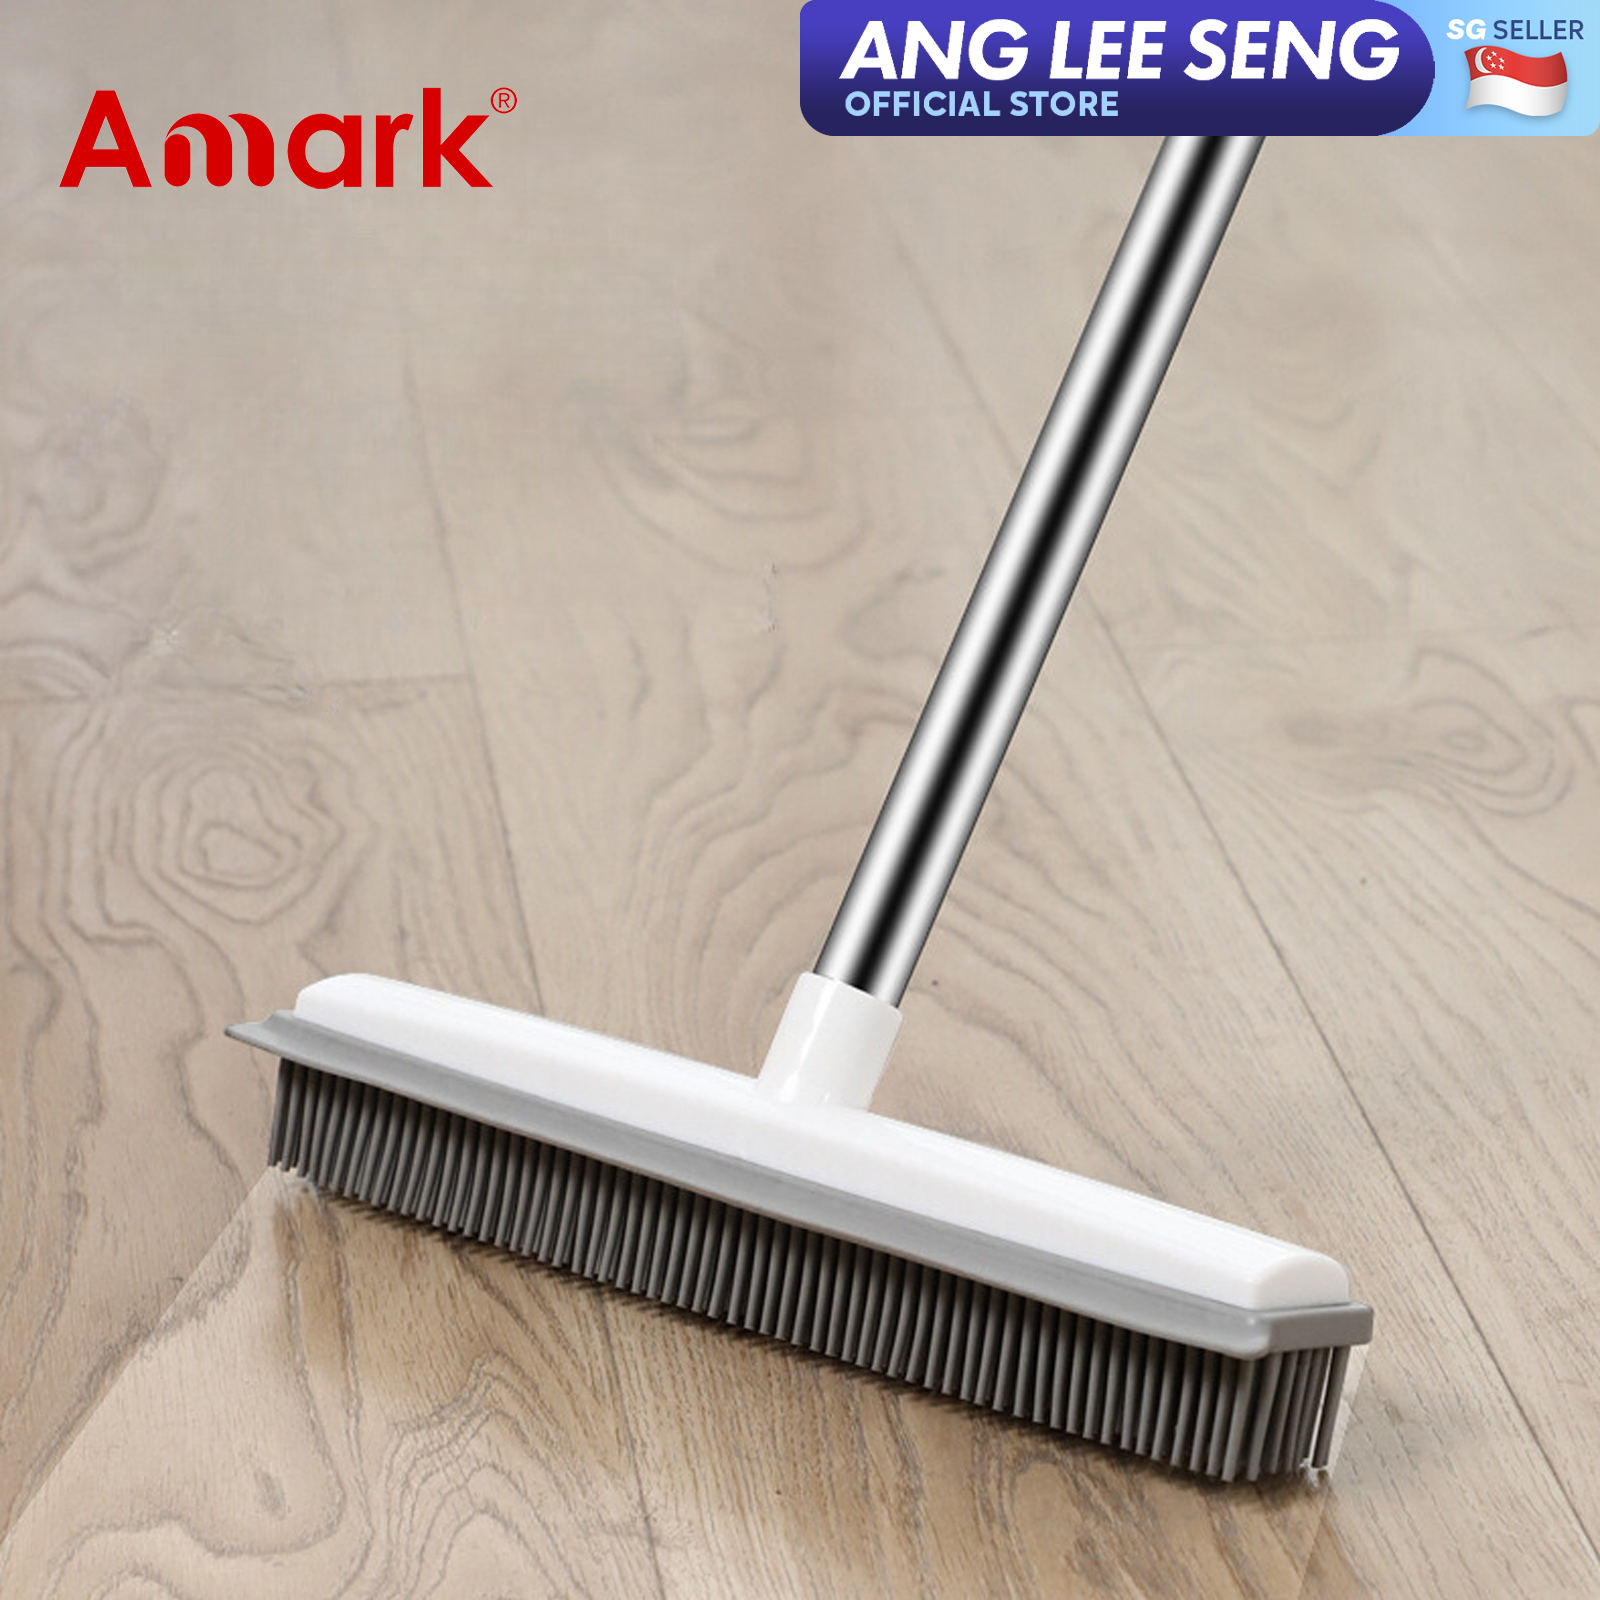 Amark 2-in-1 Rubber Broom & Floor Squeegee Scraper